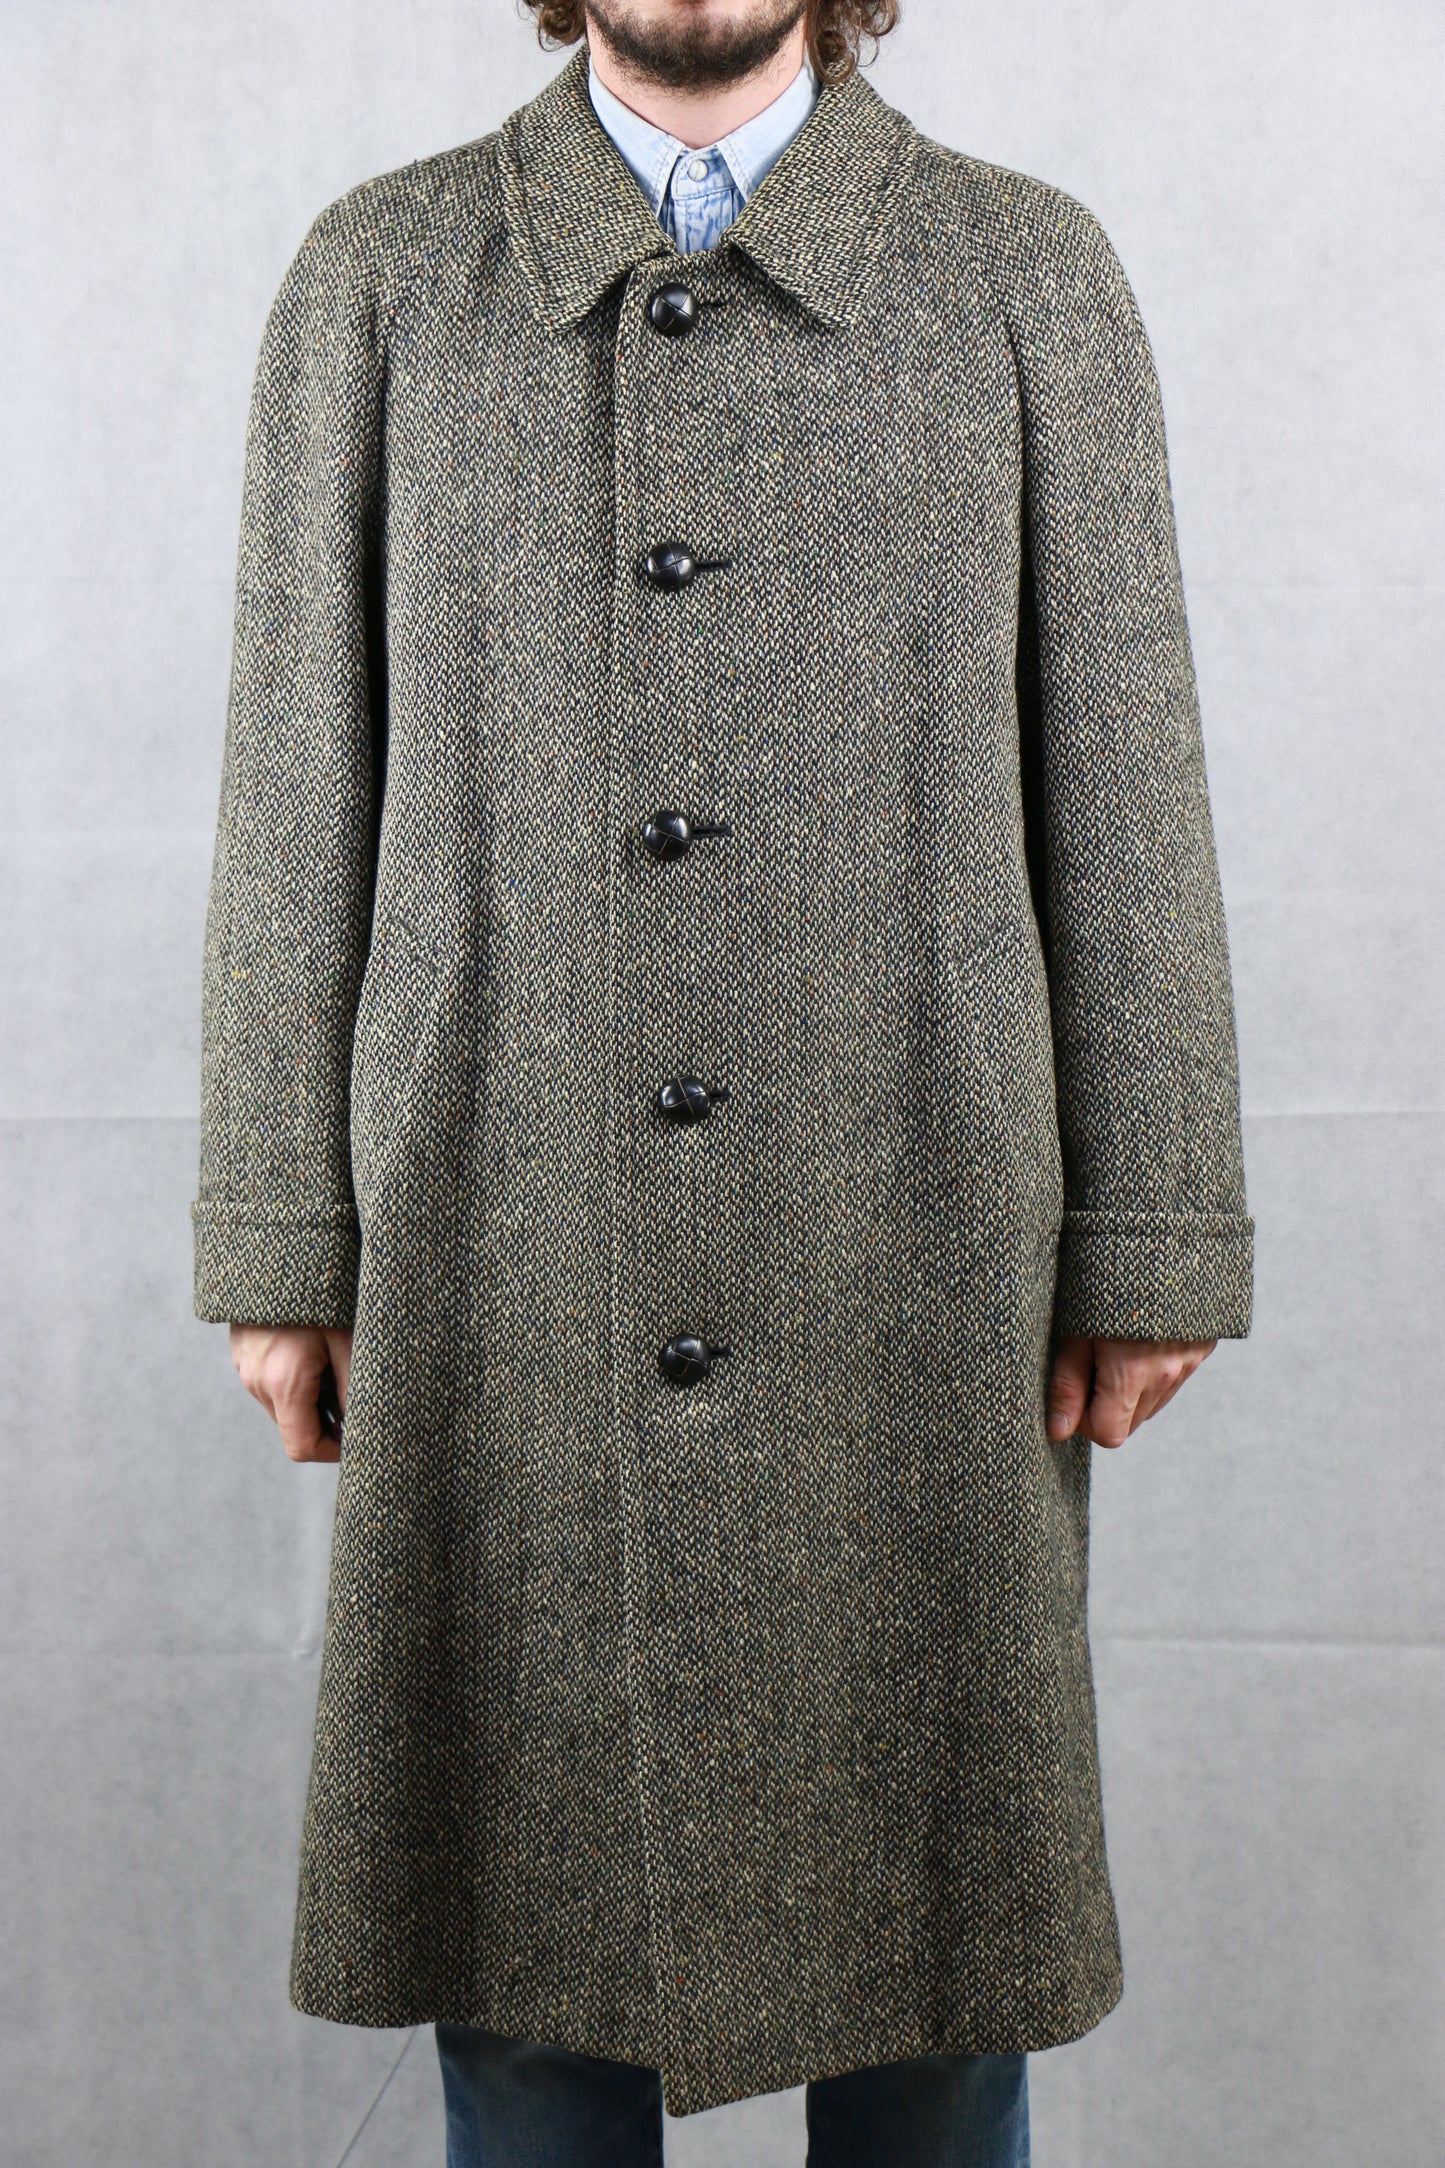 Aquascutum Tweed Coat Wooden Buttons - vintage clothing clochard92.com